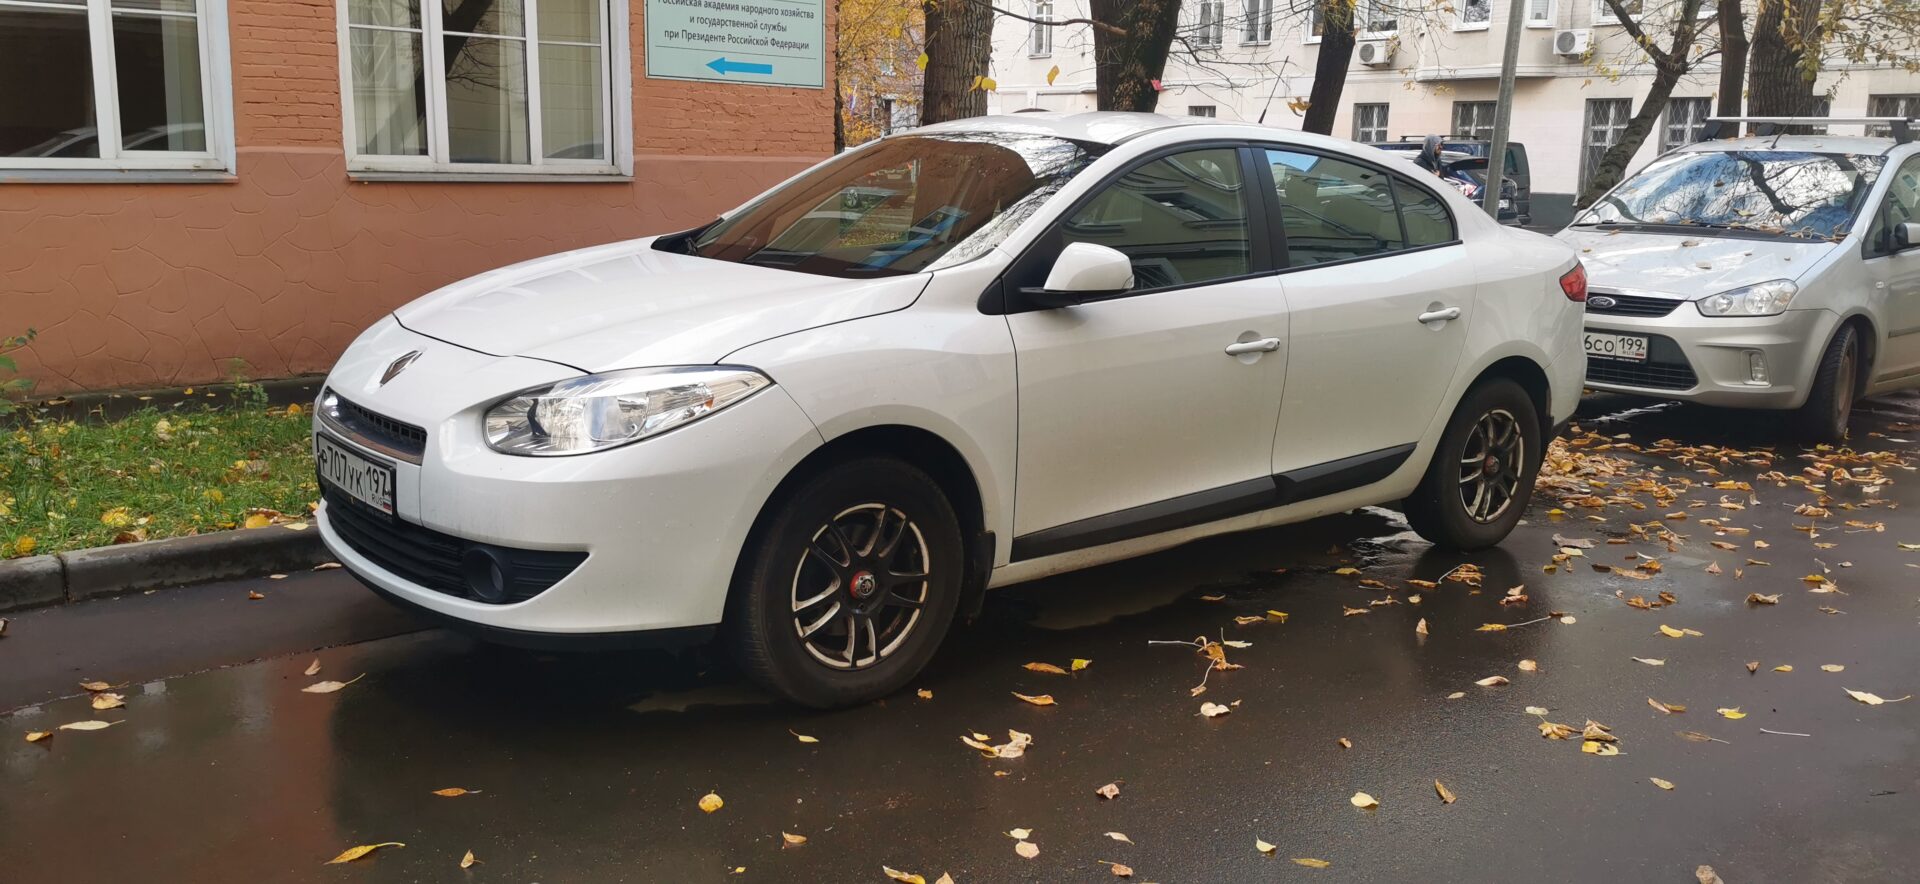 Илья Парфенов нашел 5 автомашин с пробегом на рынке РФ за 300 тыс. рублей